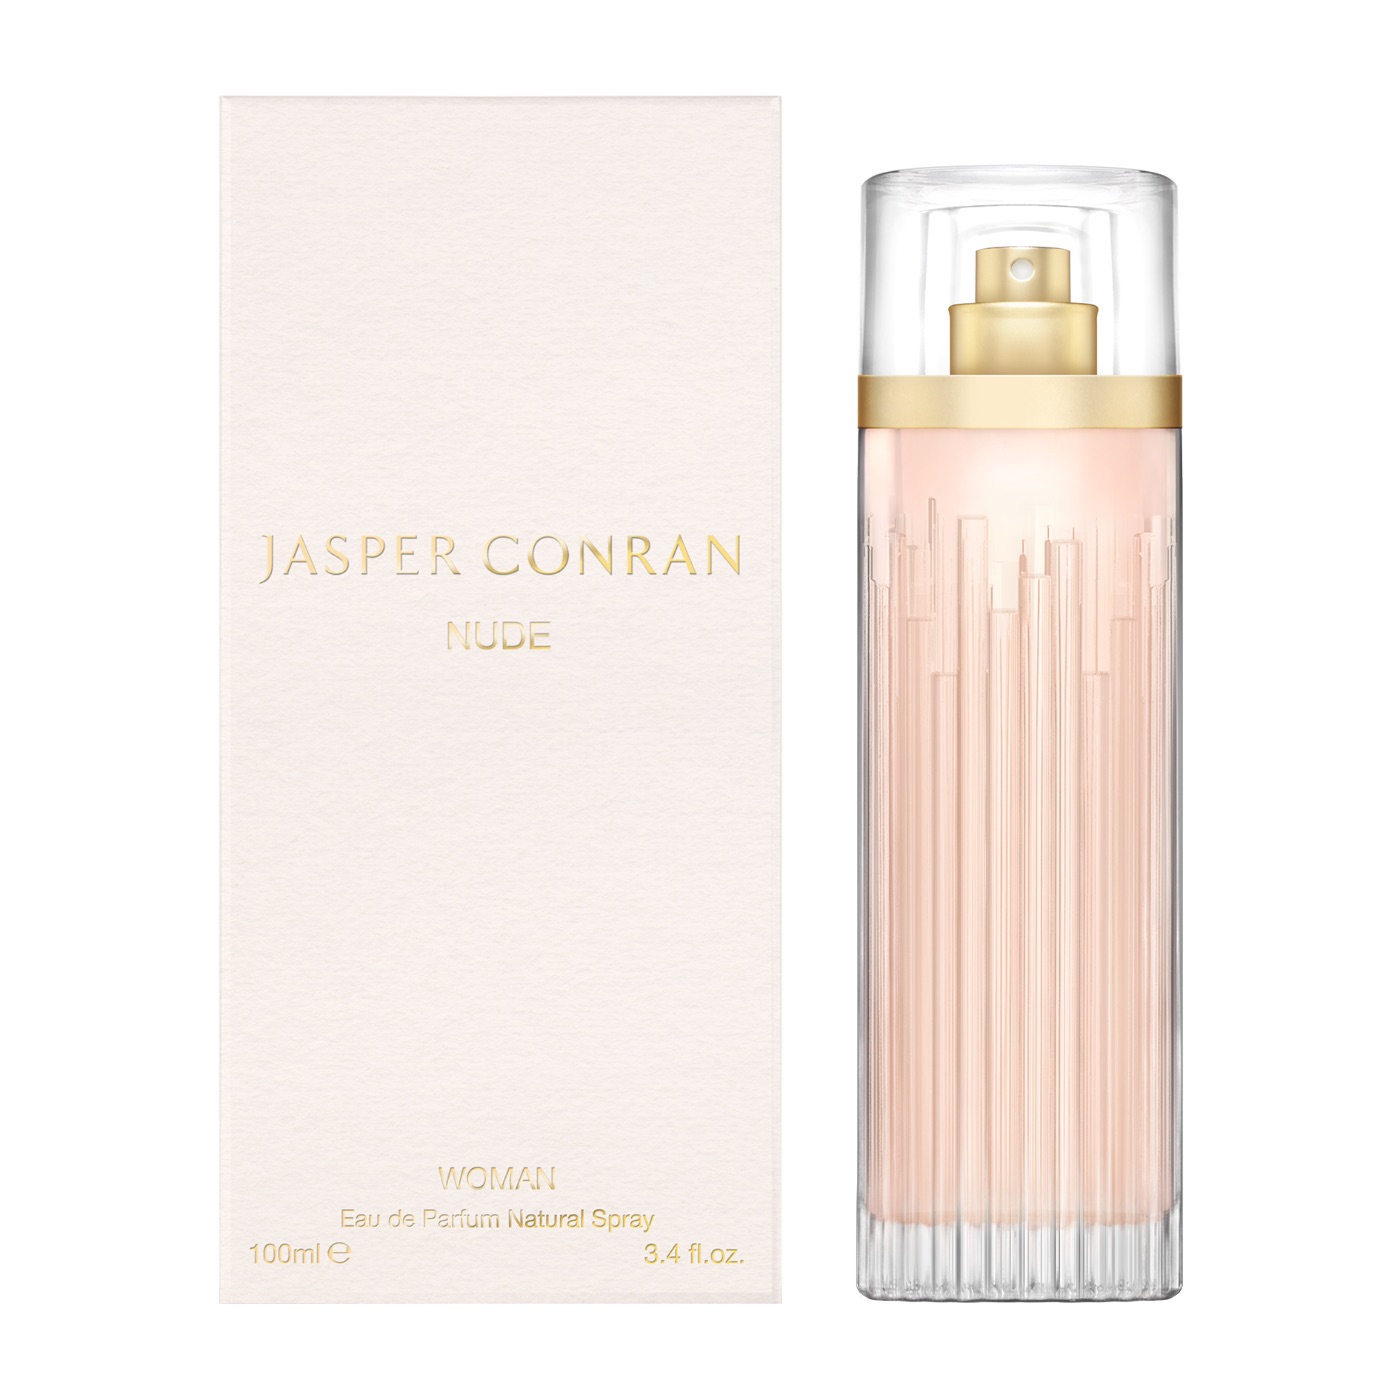 Jasper Conran Nude Woman Eau De Parfum 100ml